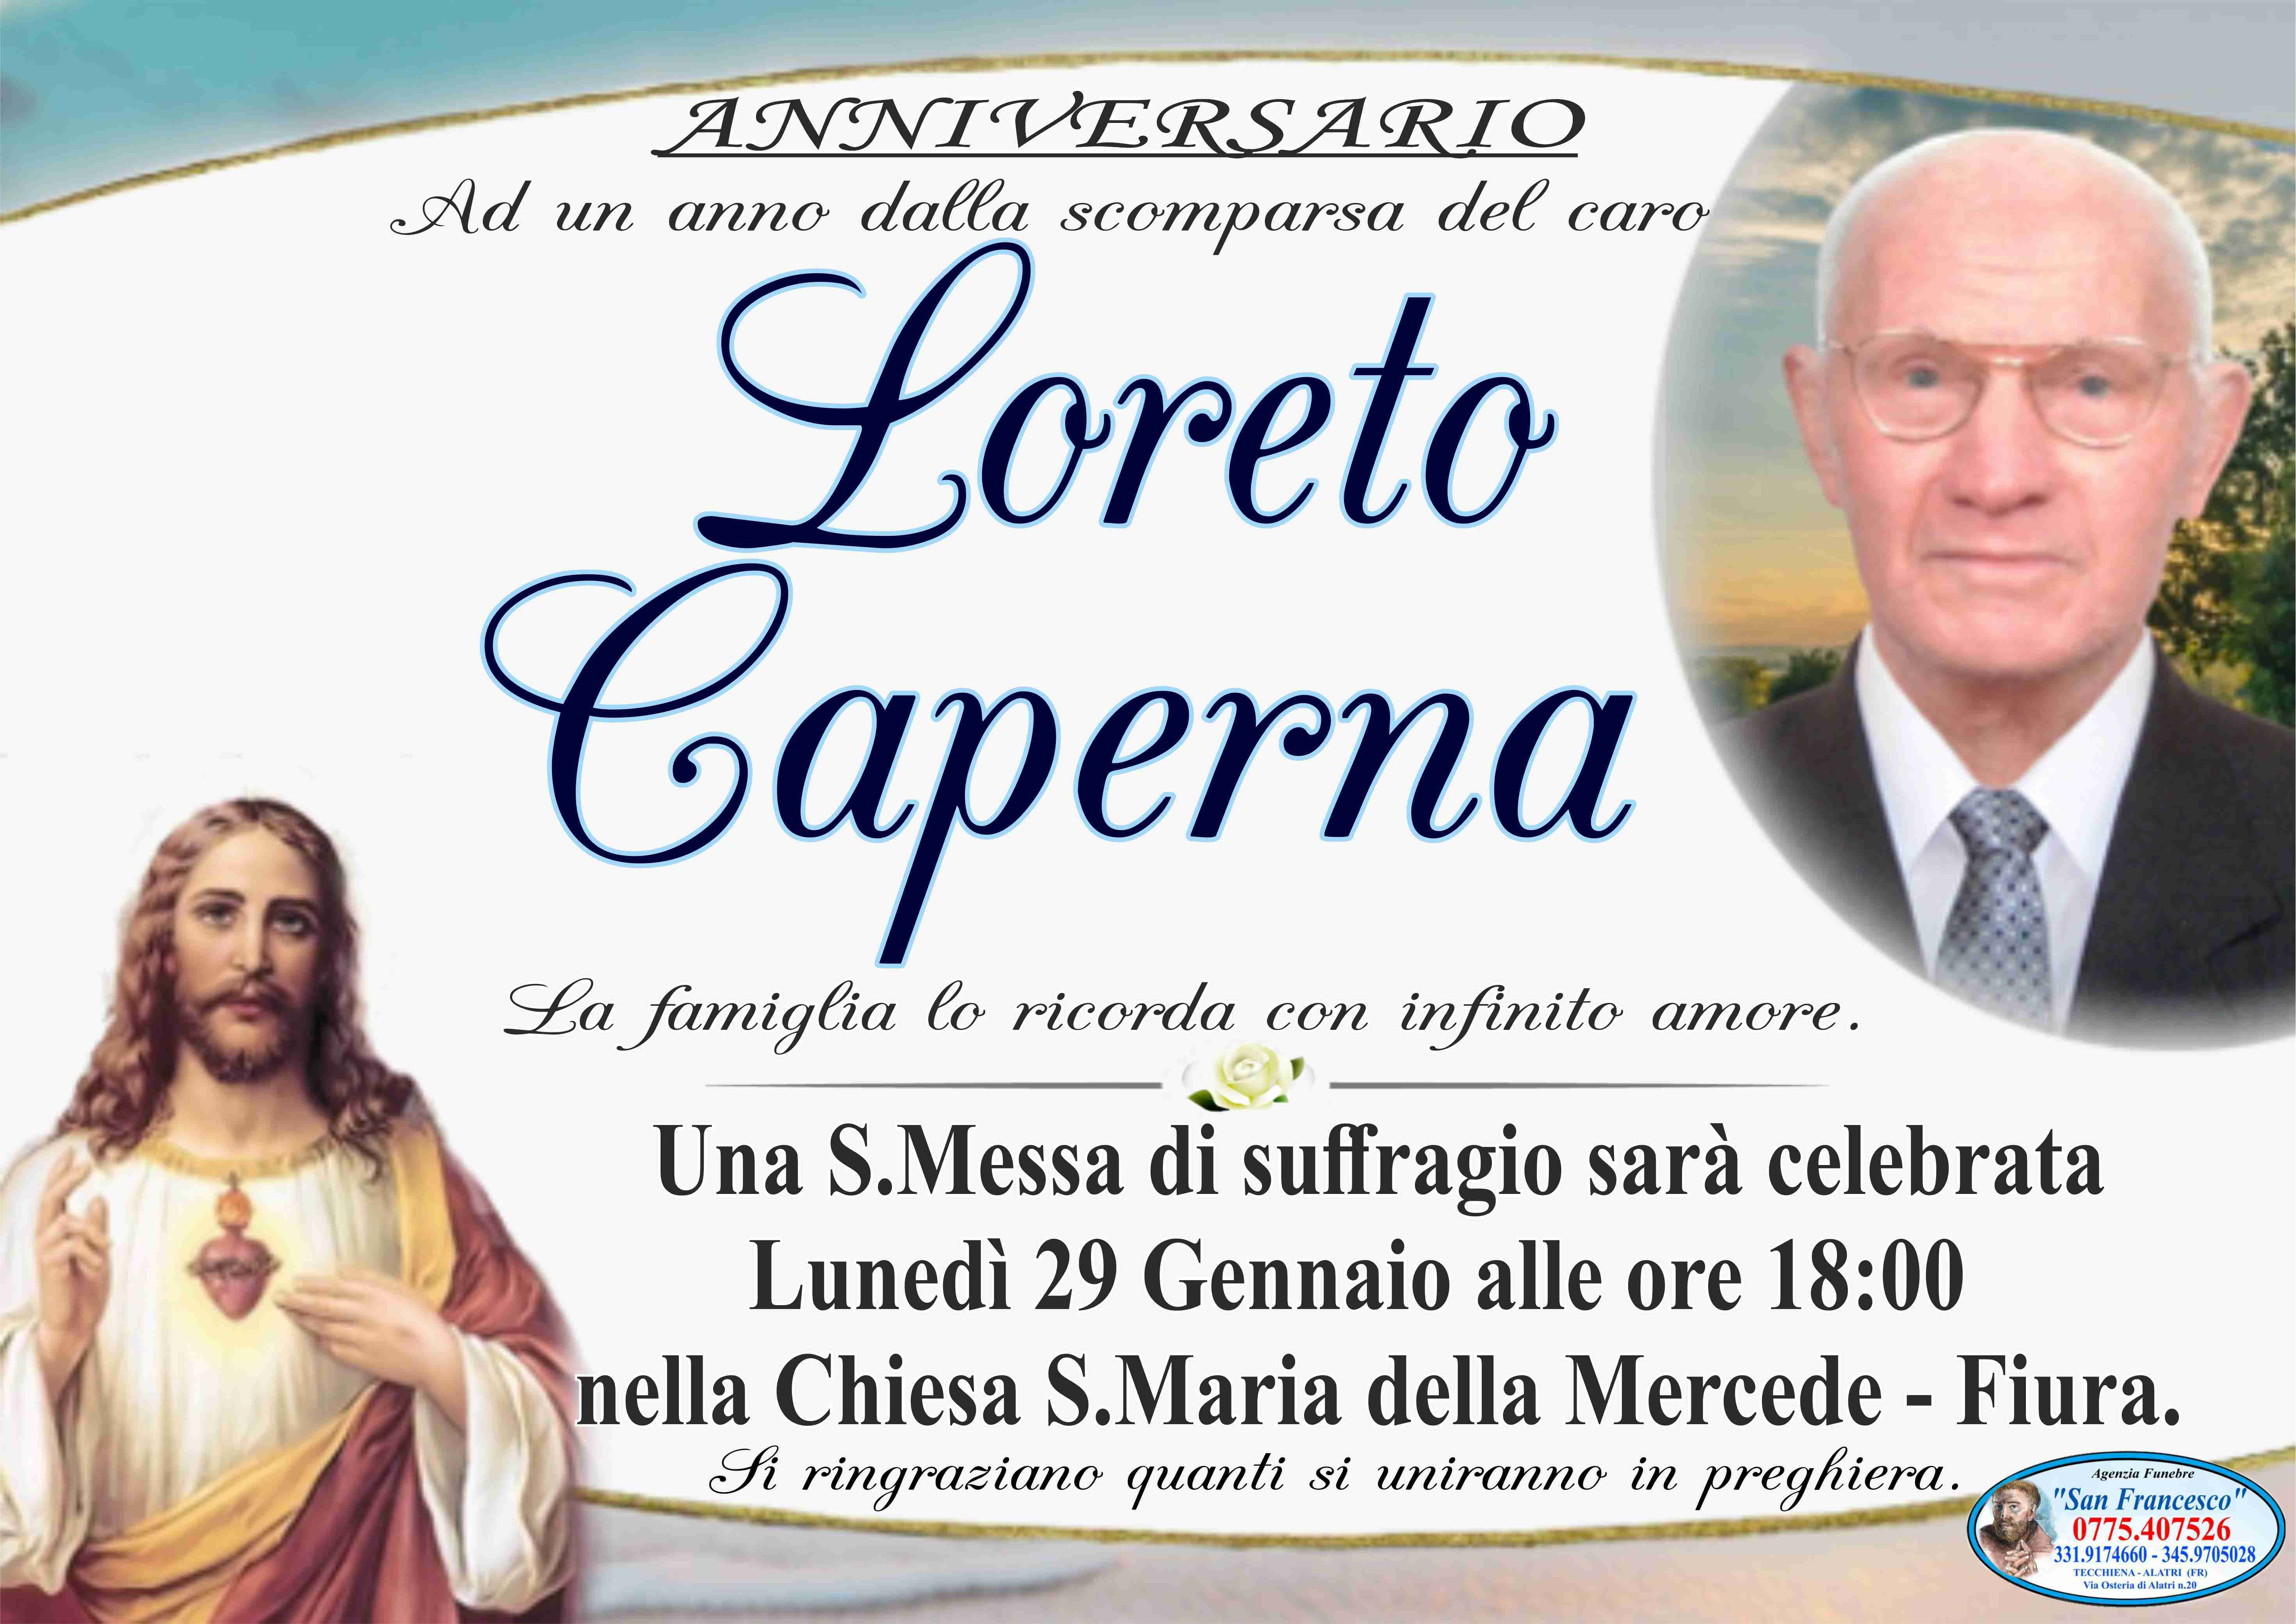 Loreto Caperna